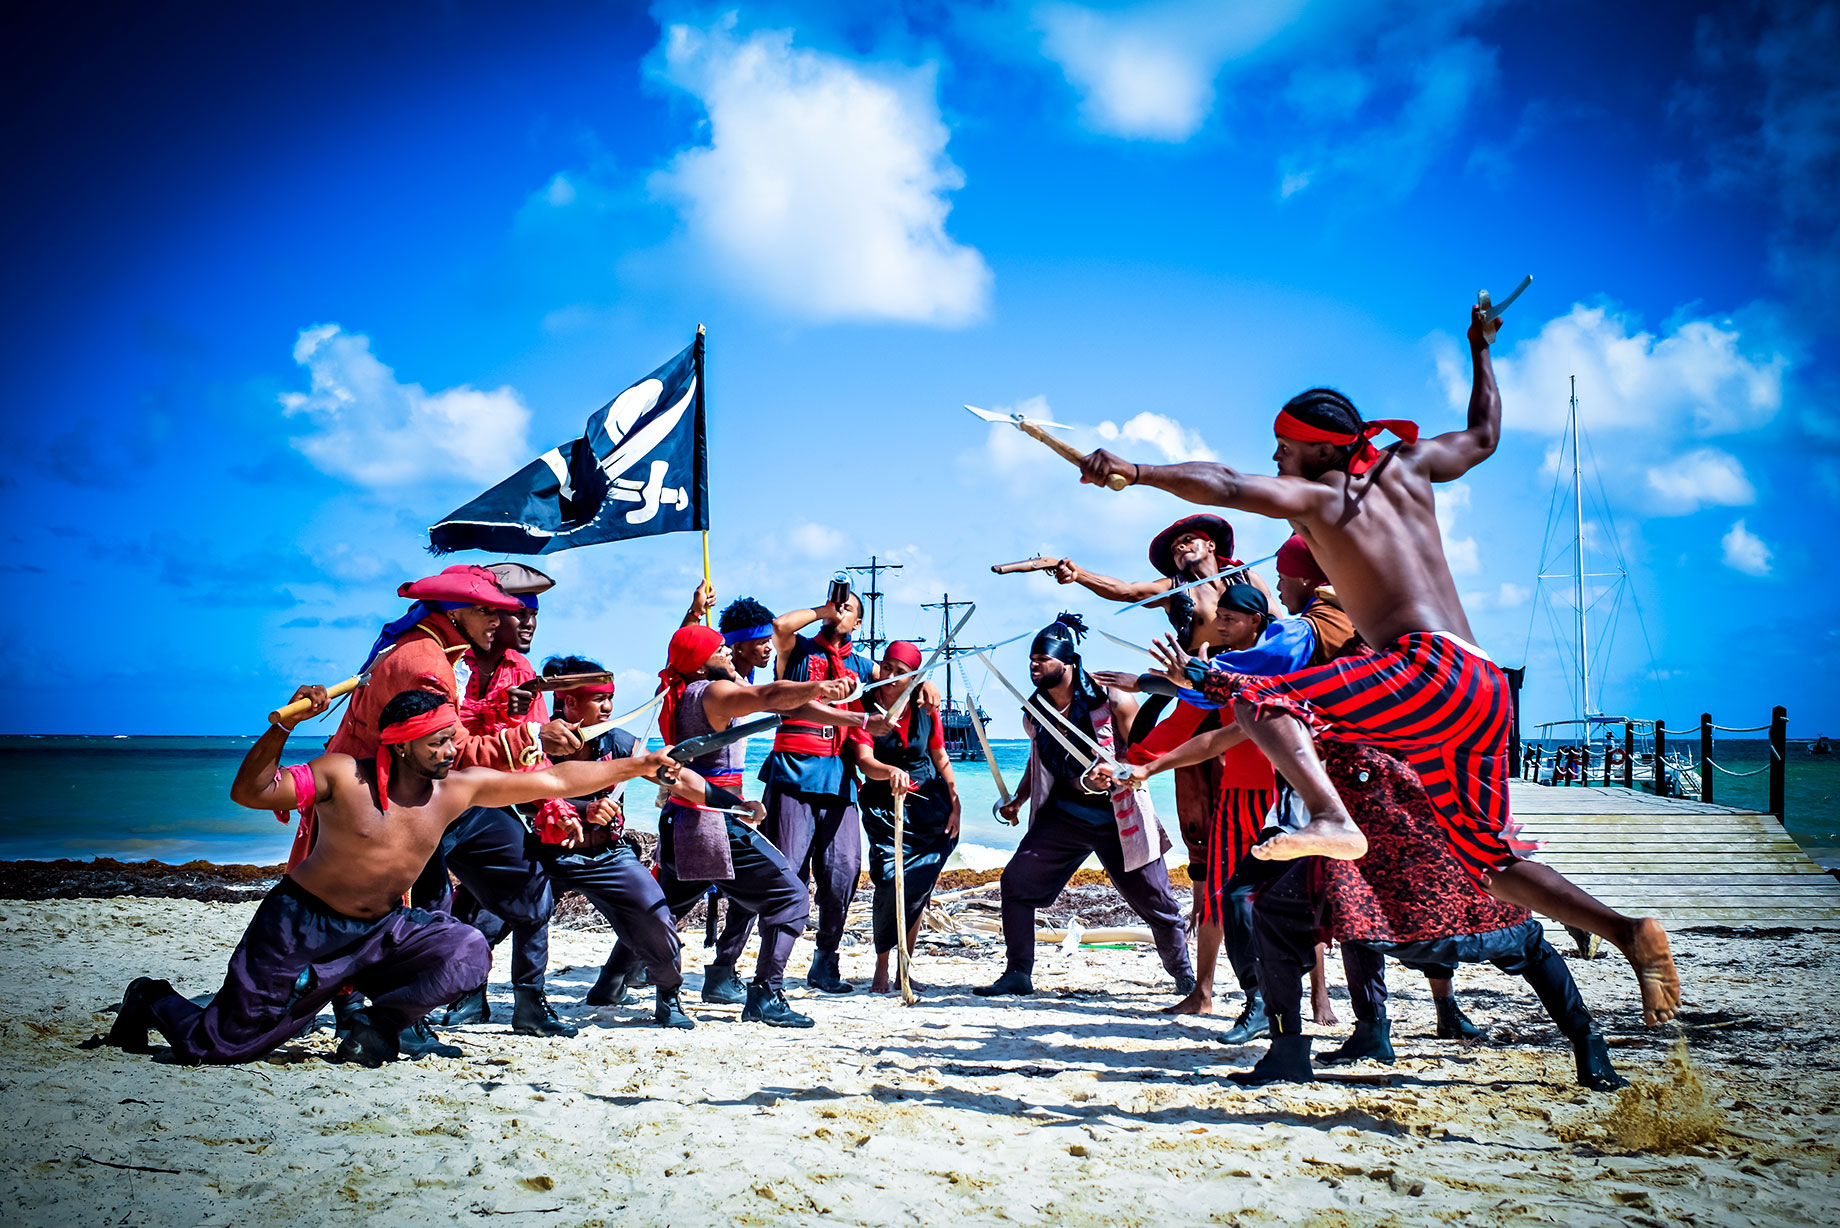 Pirates – Ocean Adventures Punta Cana, Dominican Republic